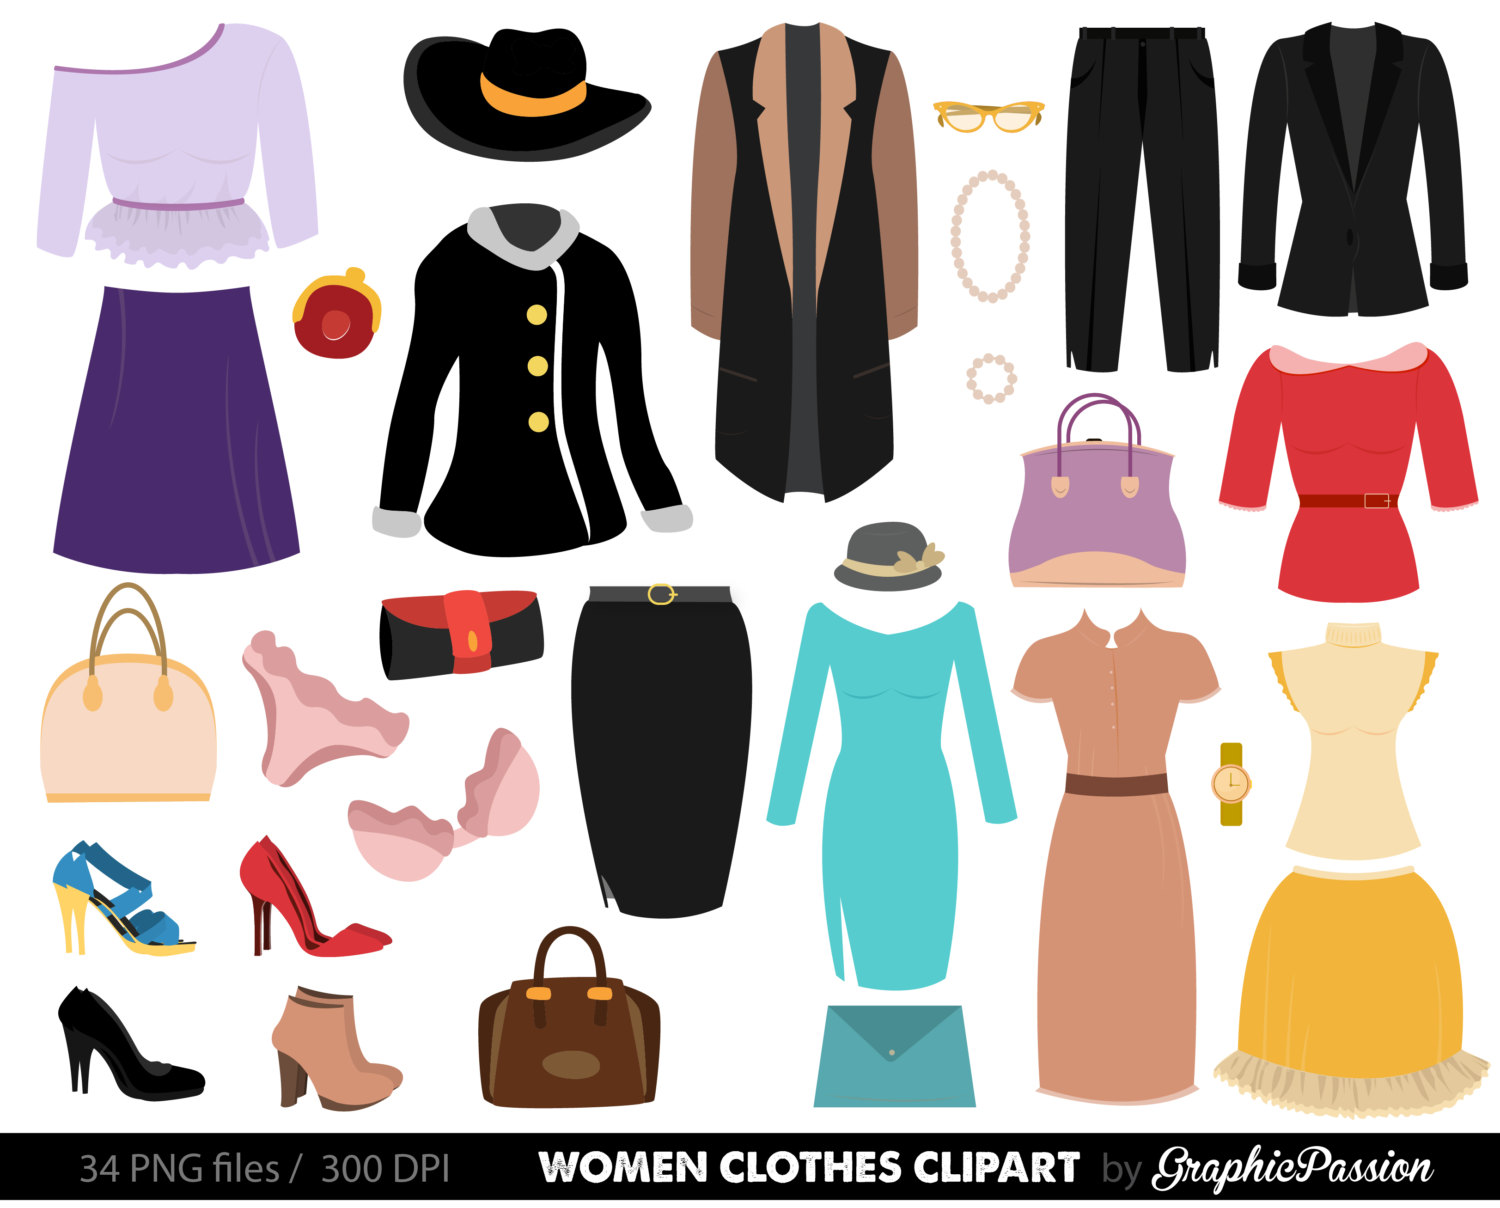 Clothes Clipart. Fashion Clipart Fashion clothes clipart Women clothes clipart shopping clipart clothes digital images INSTANT DOWNLOAD